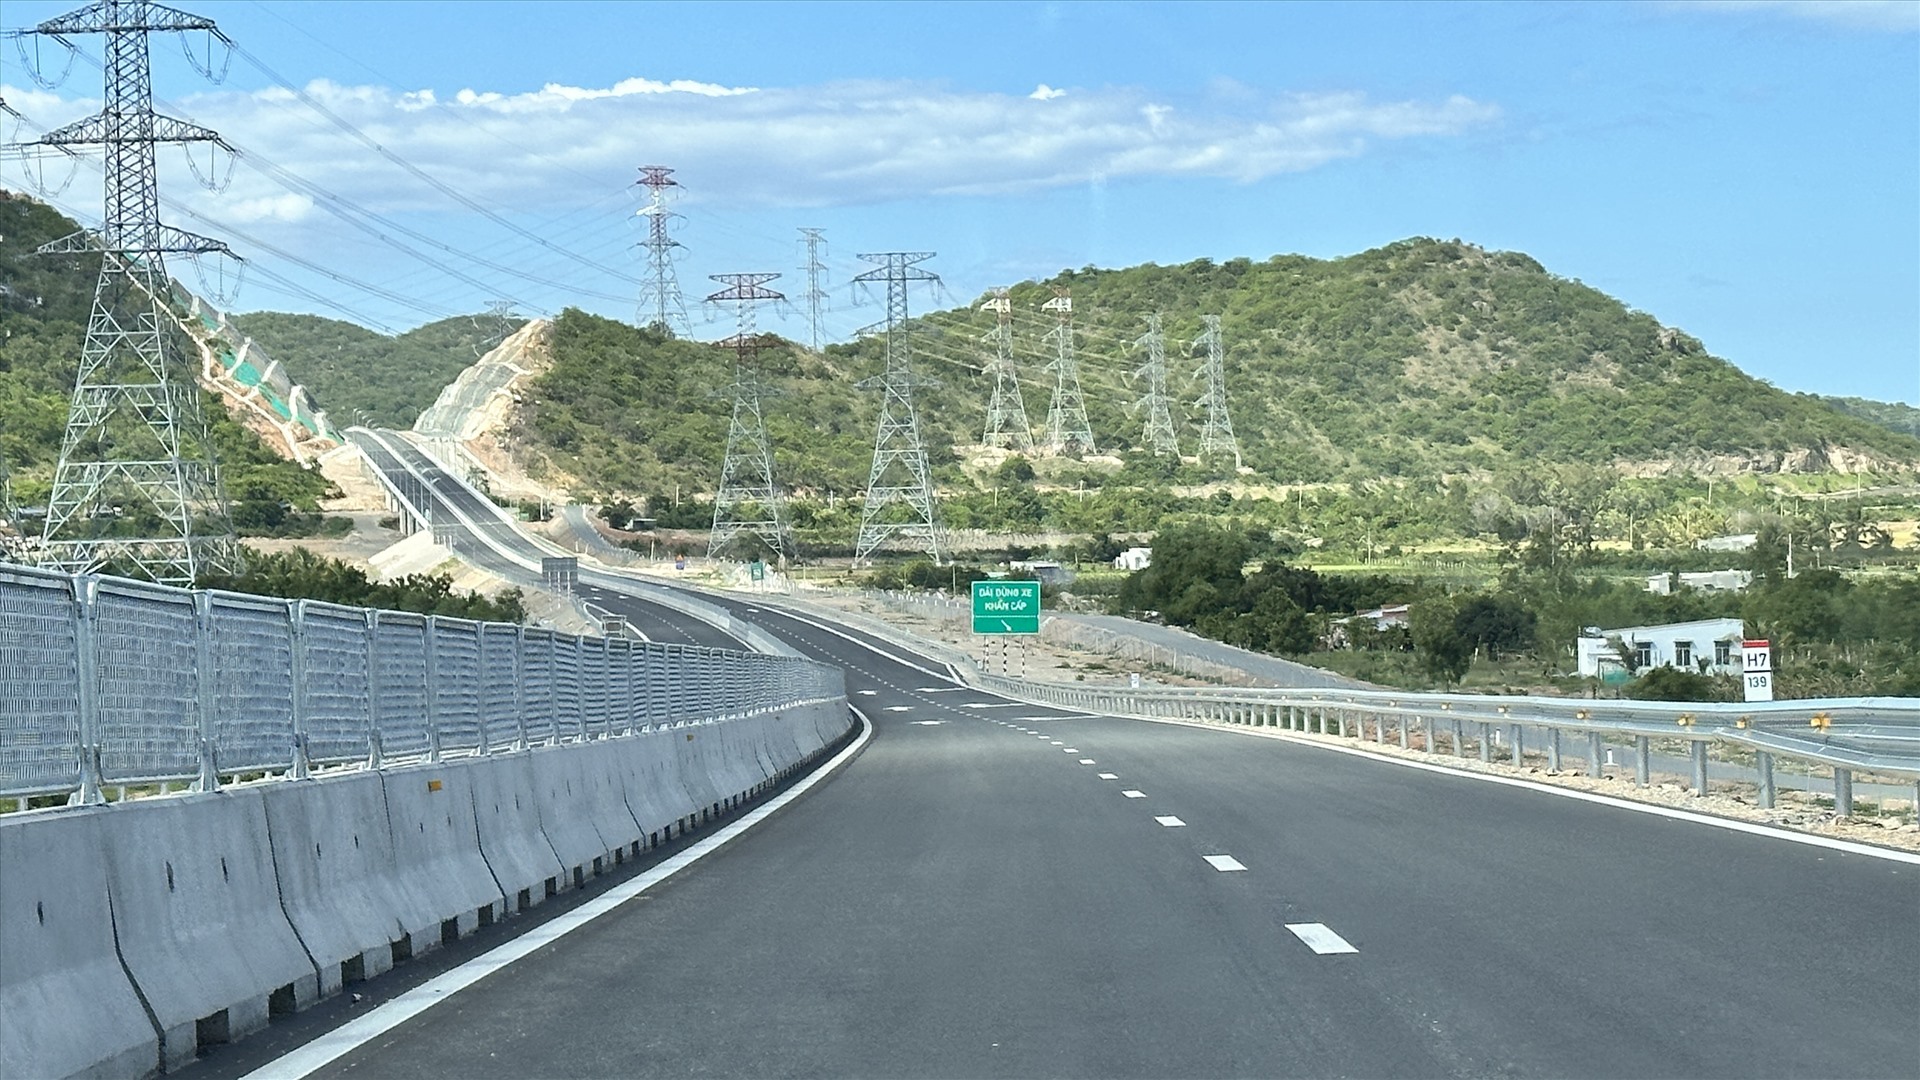 Cao tốc Vĩnh Hảo - Phan Thiết đoạn qua huyện Hàm Thuận Bắc, Bình Thuận. Ảnh: Duy Tuấn